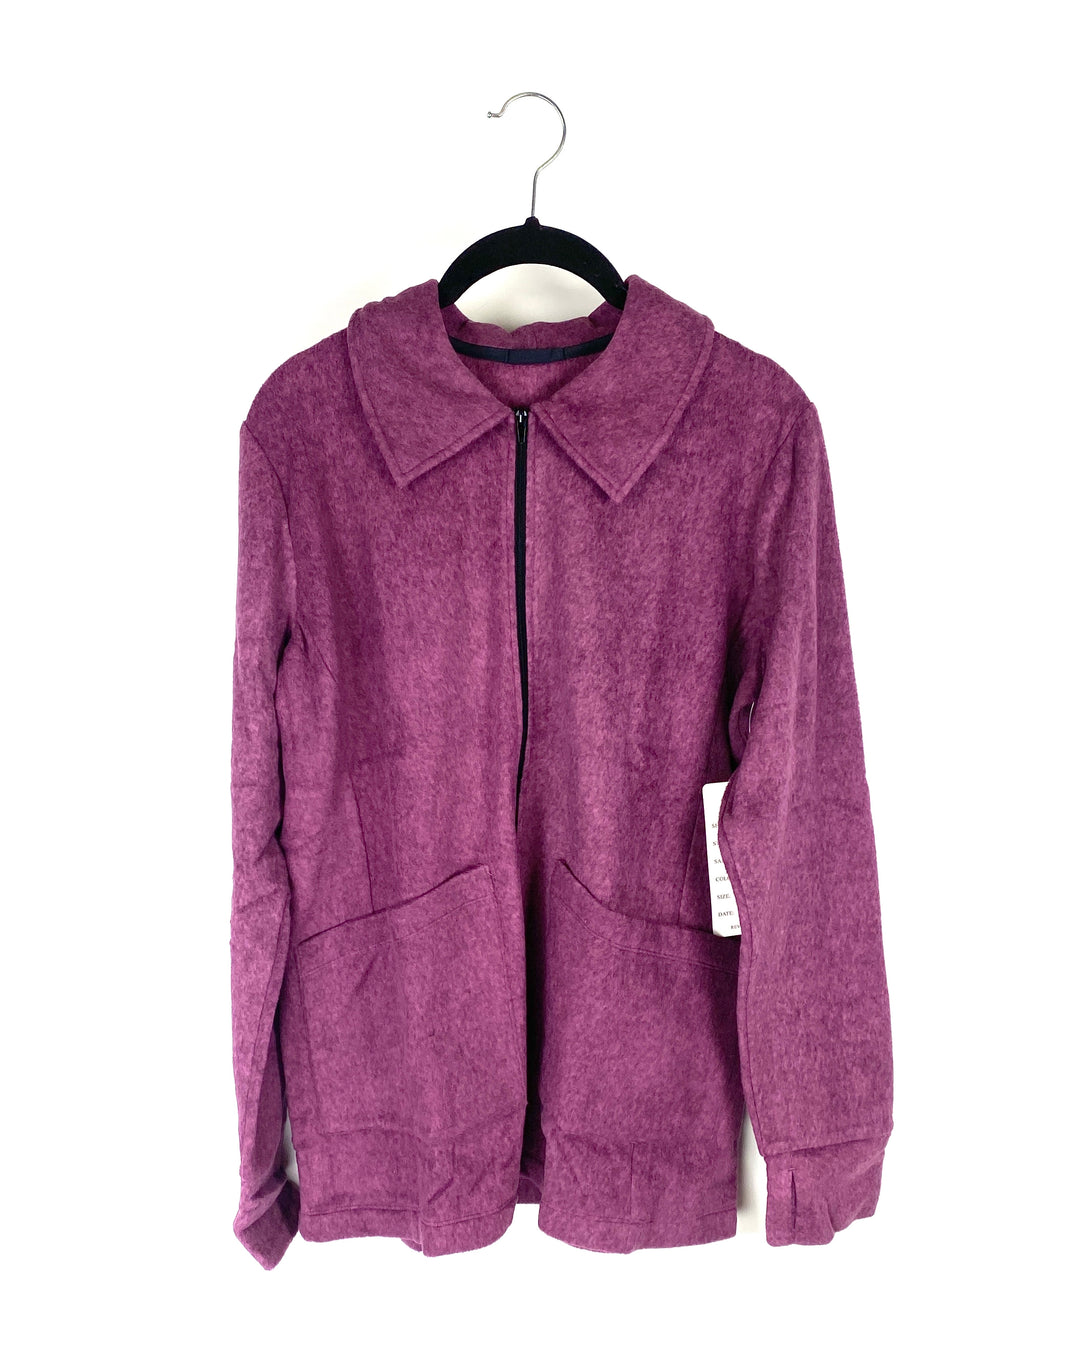 Heathered Purple Jacket - Small